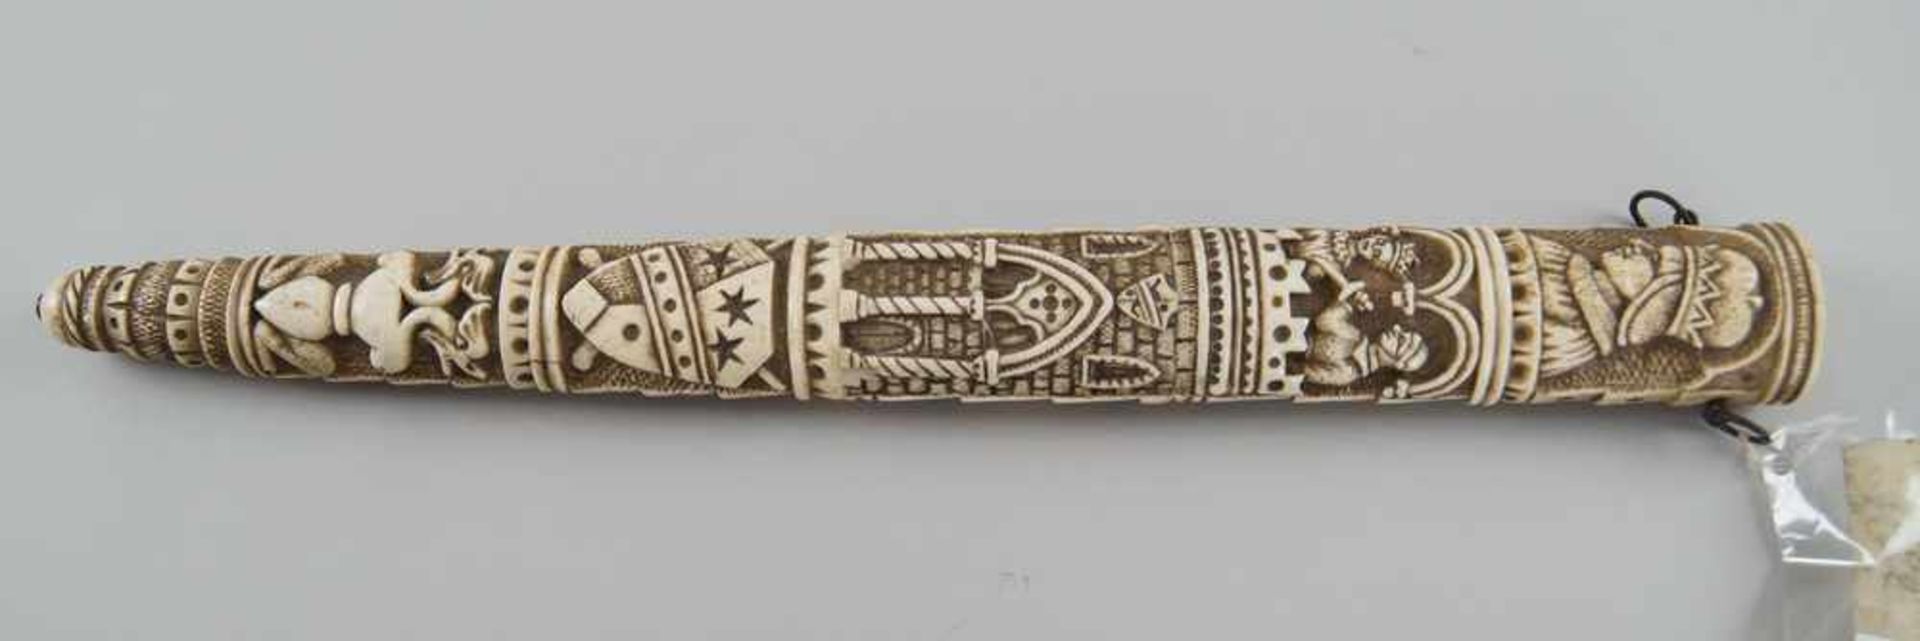 Schwert mit fein geschnitzter Scheide und Griff aus Elfenbein, Klinge aus Eisen, 19. JH, - Bild 10 aus 11